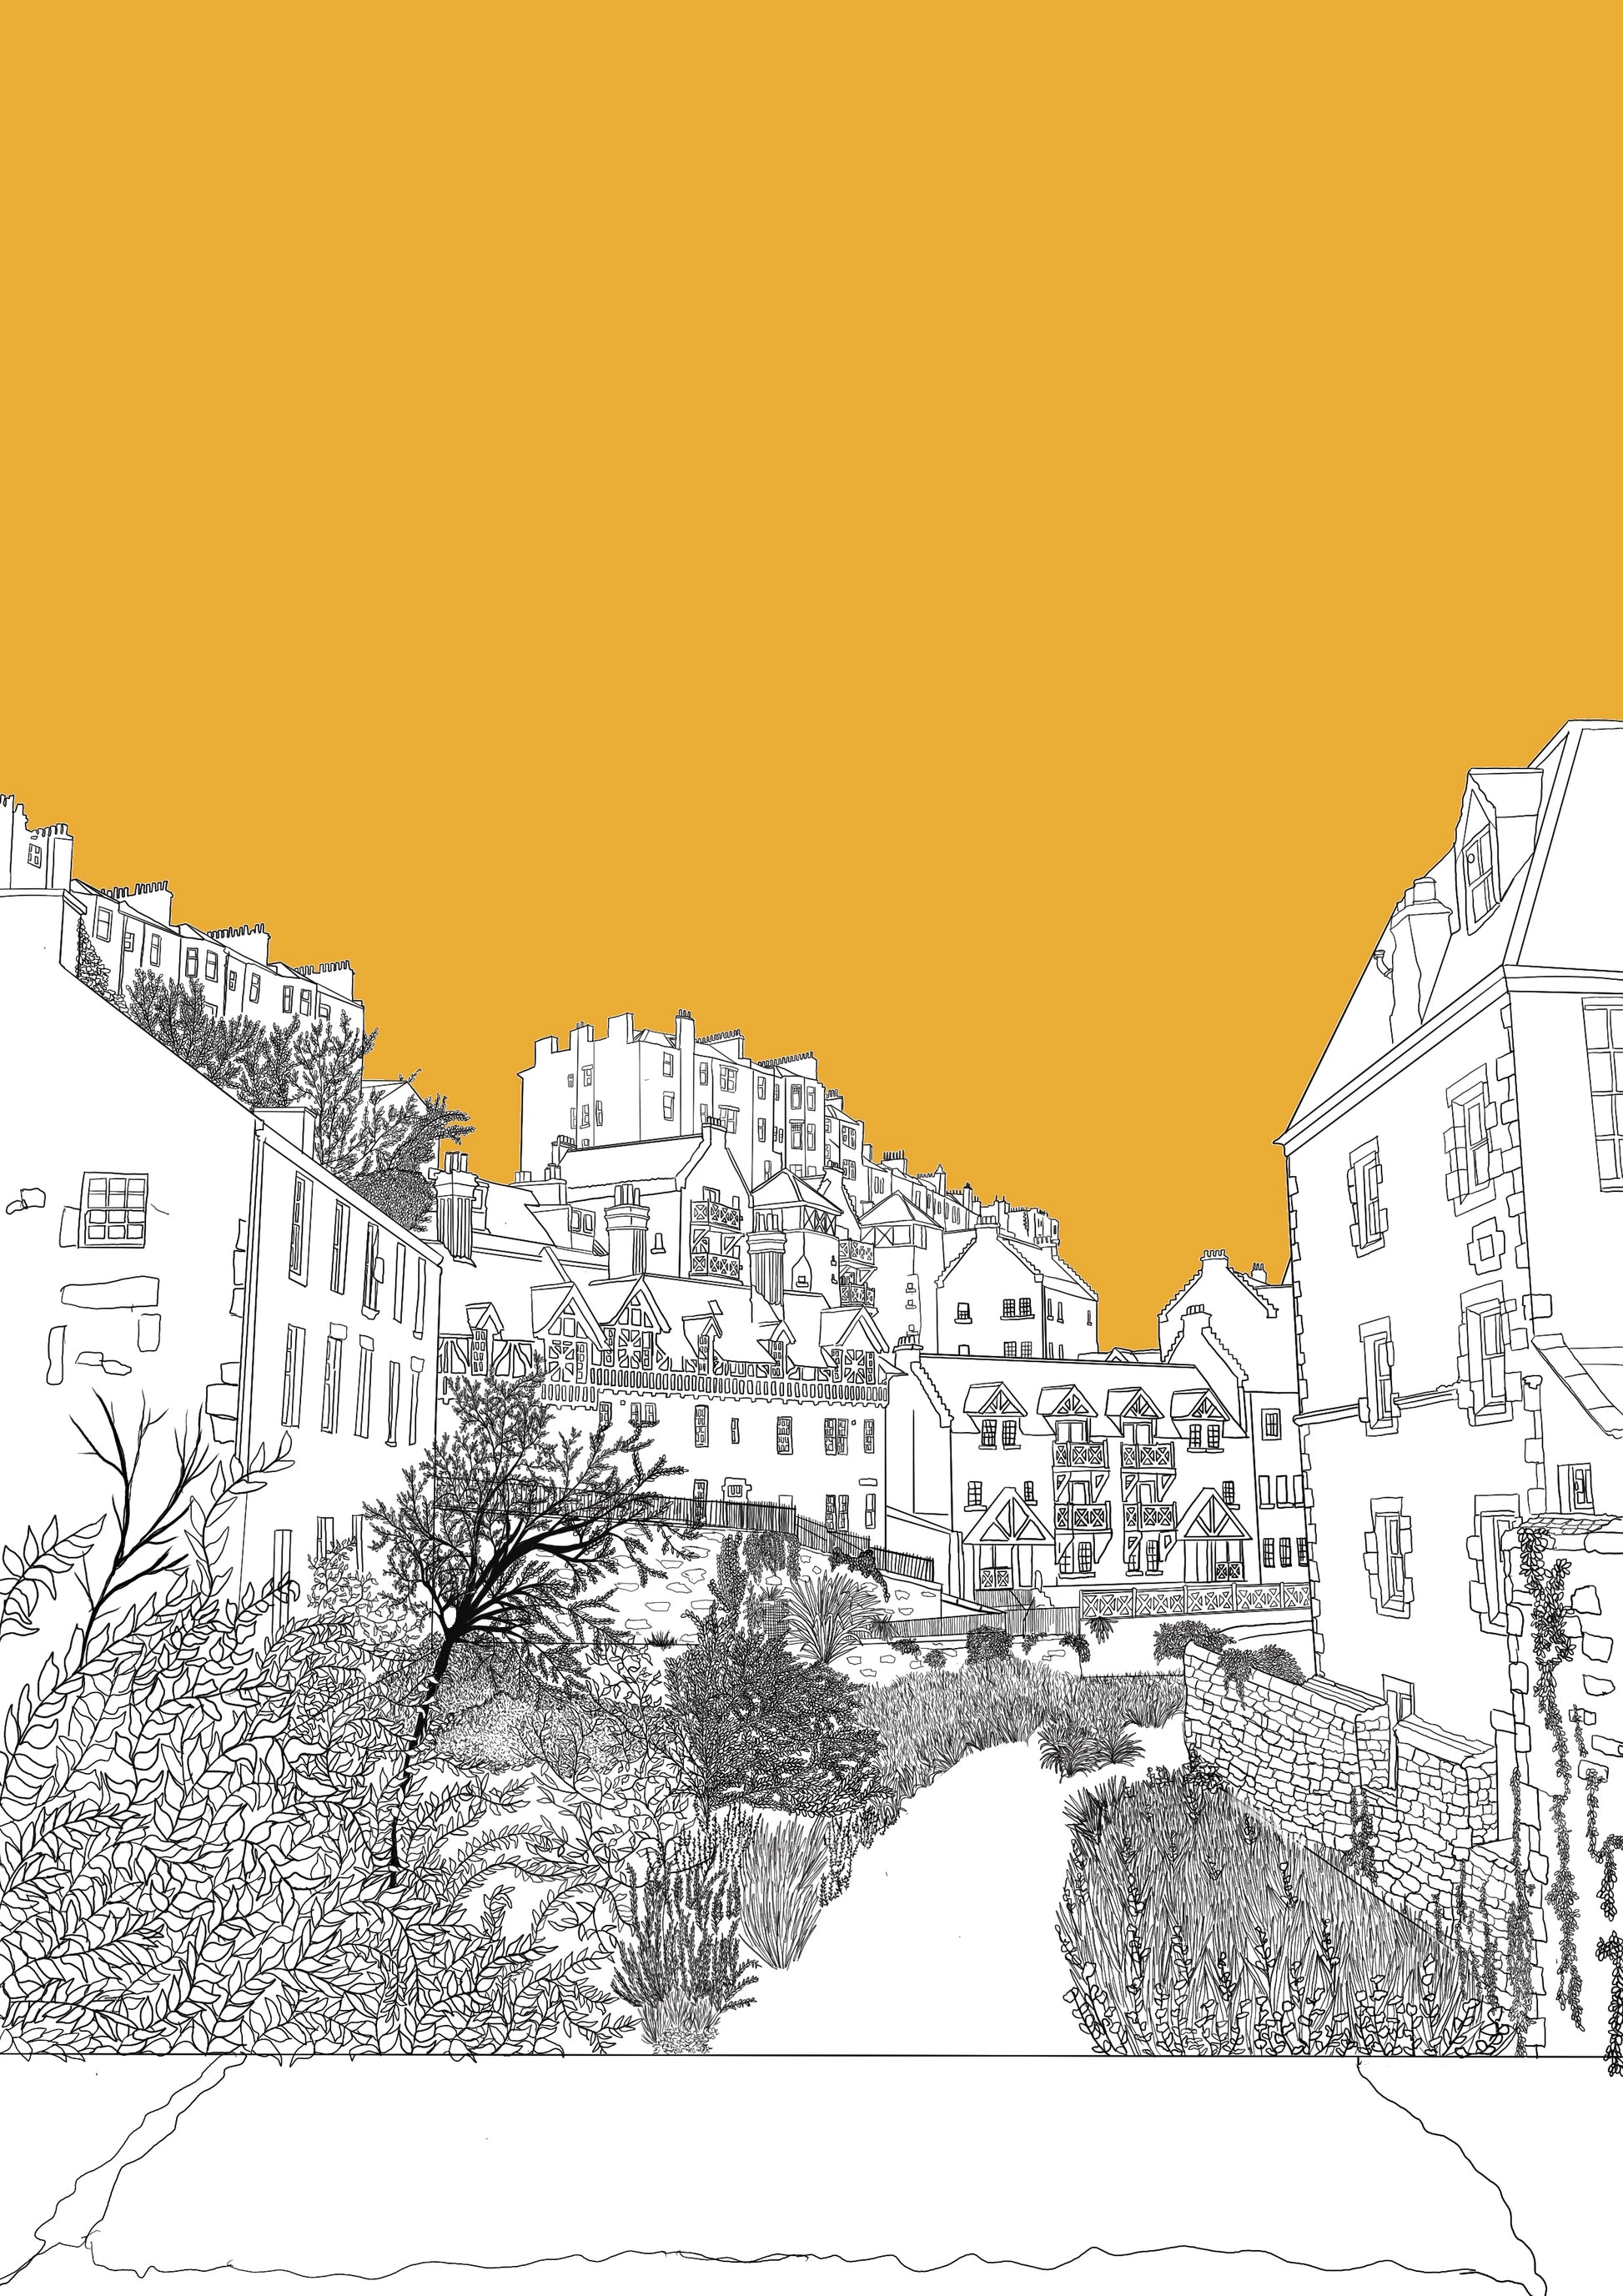 Wayward - Dean Village Edinburgh Postcard with yellow background 